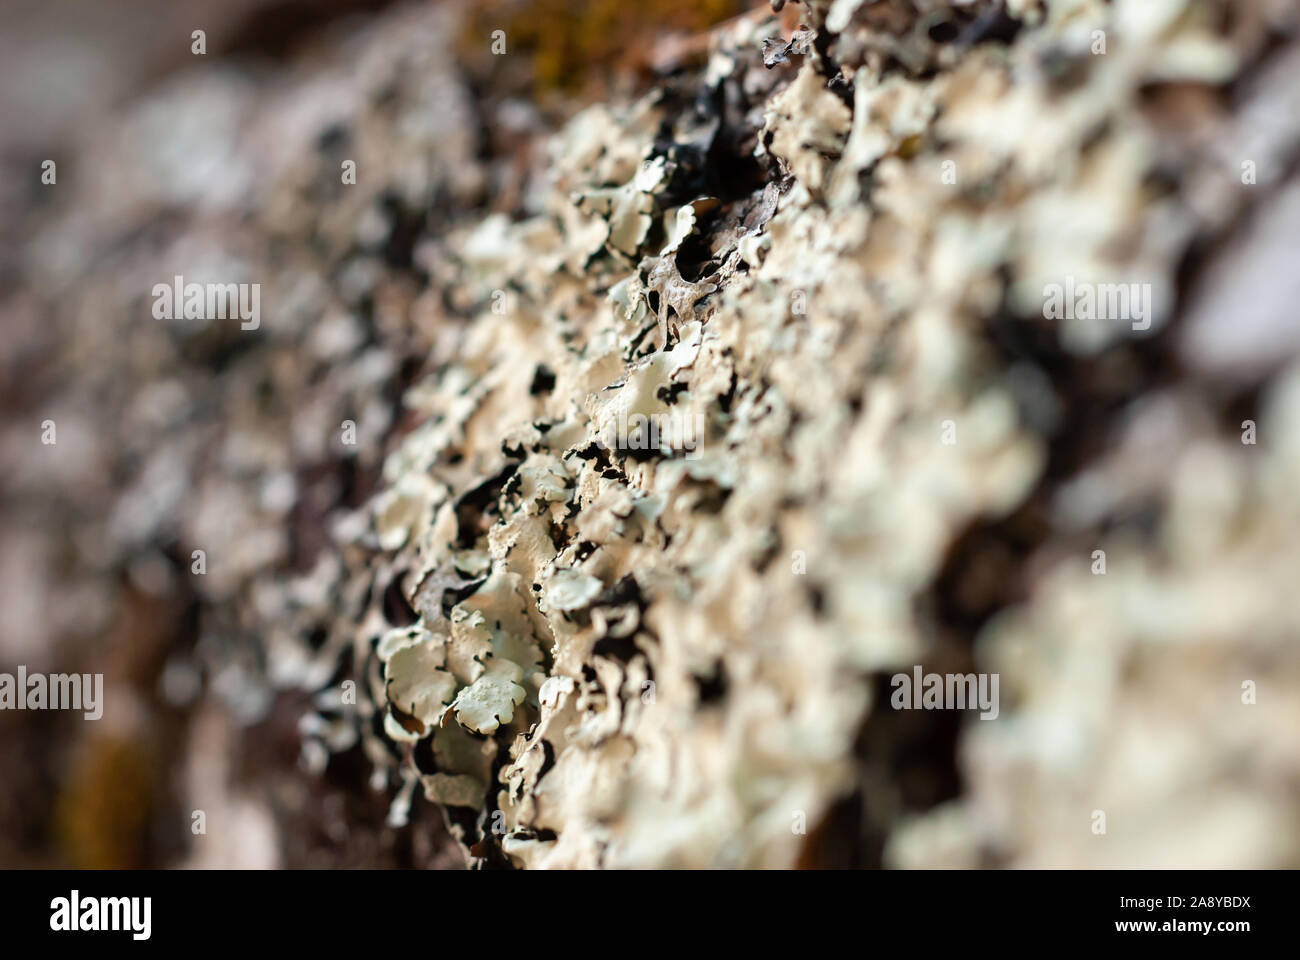 Tilt shift closeup of lichen on a log Stock Photo